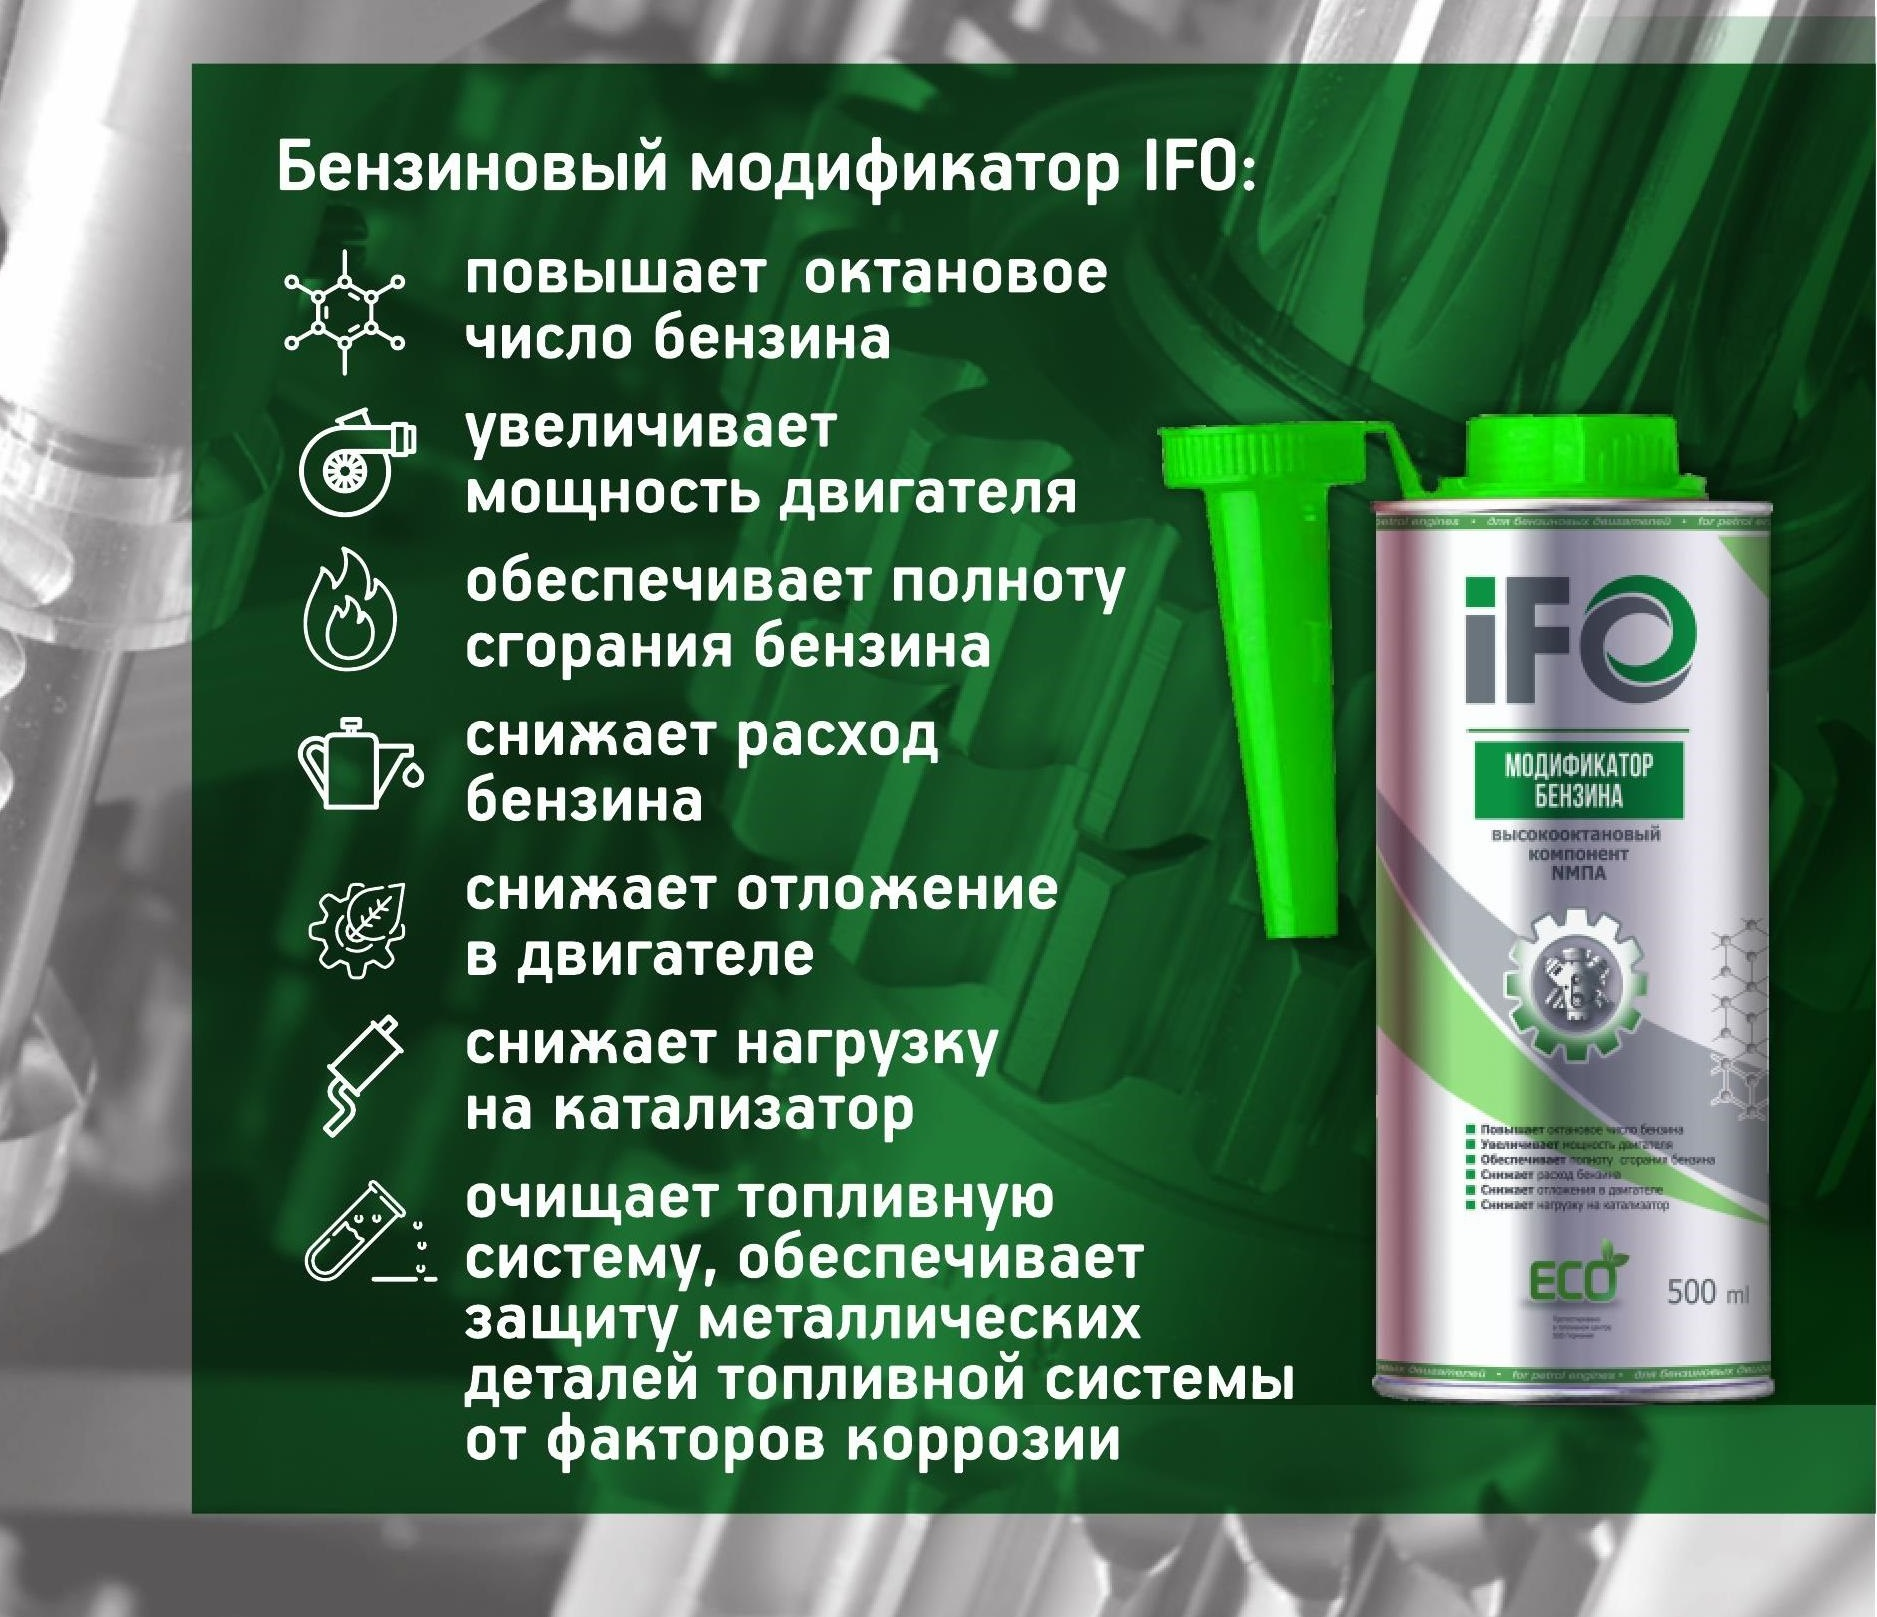 Купить запчасть ИФОТОП - IFO340 Модификатор бензина IFO